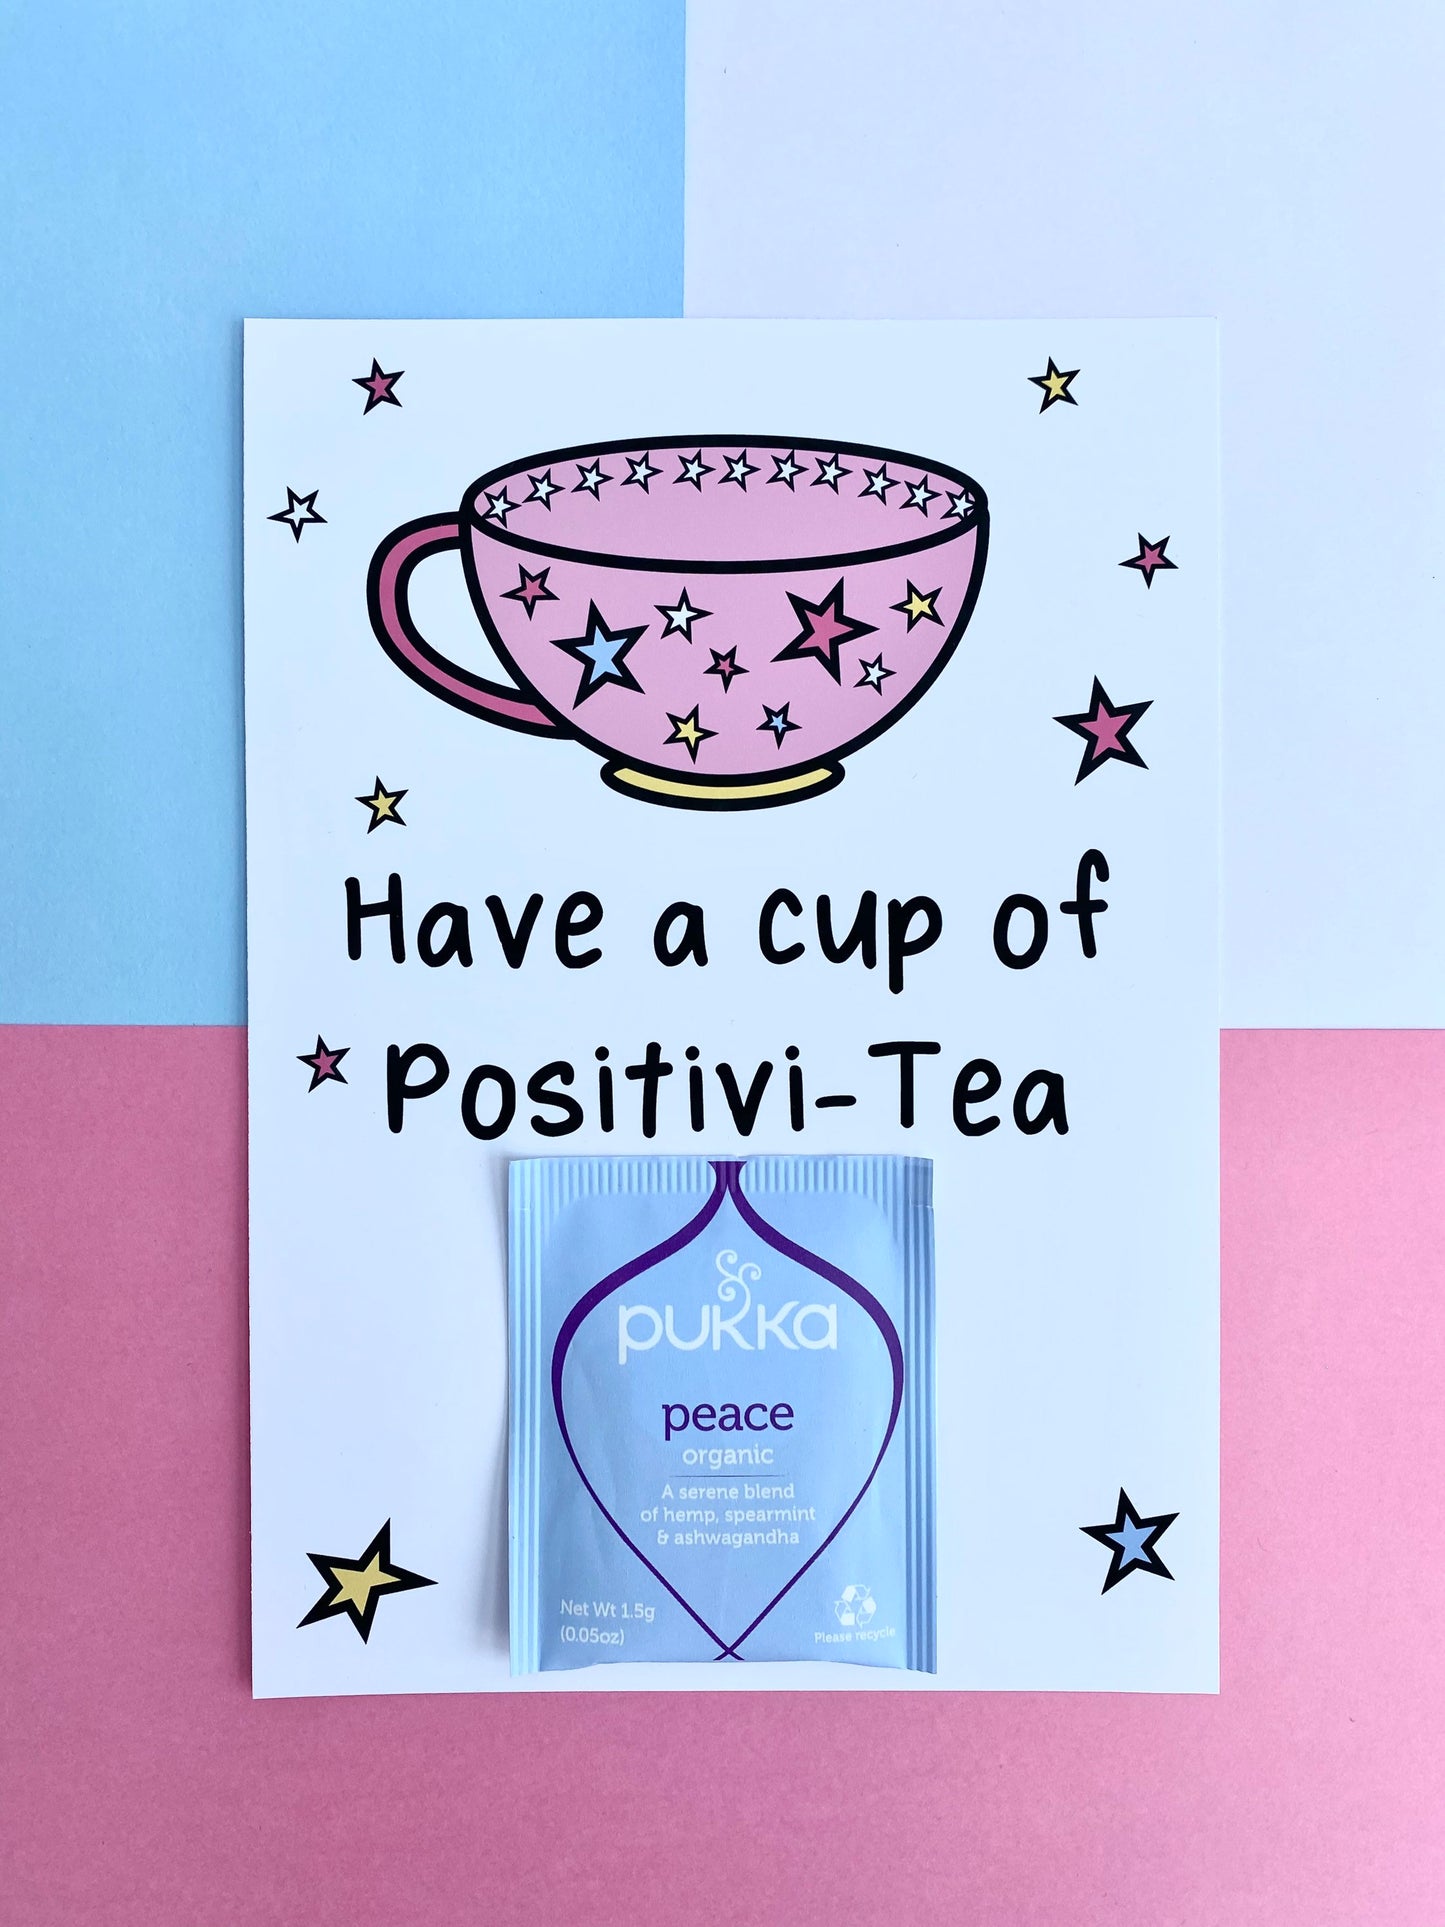 Cup of Positivi-tea